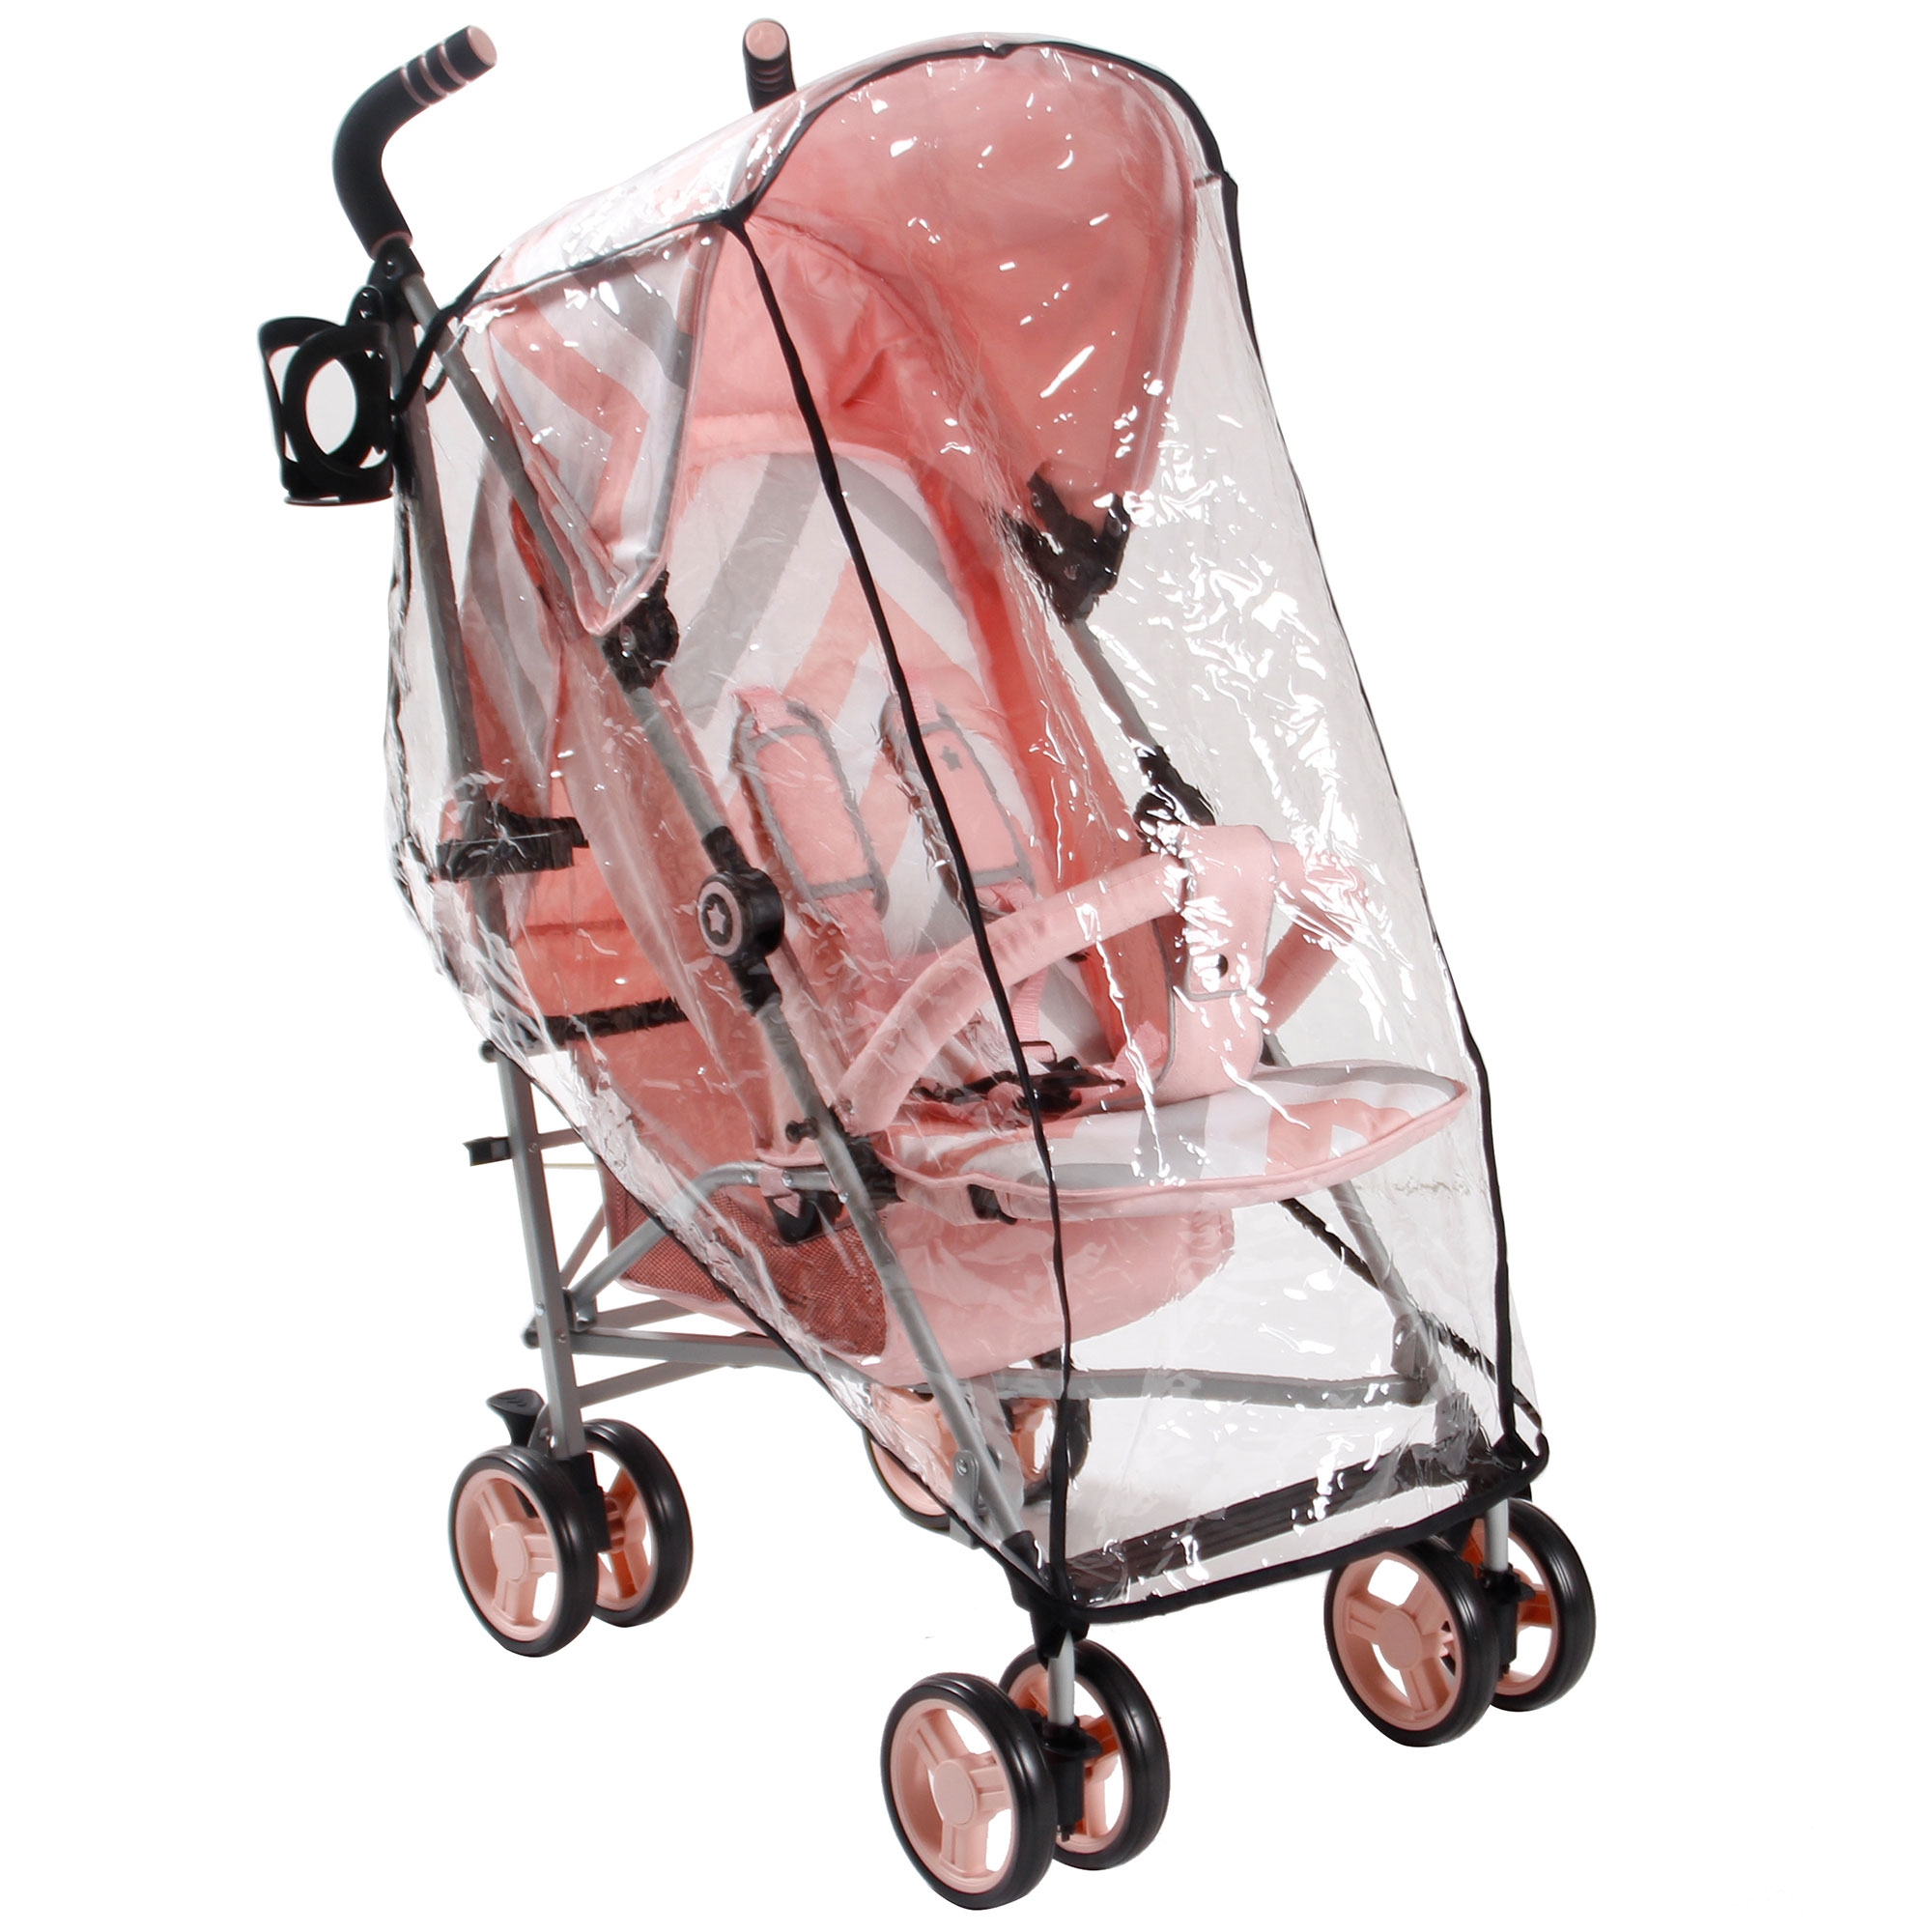 my babiie mb02 pink chevron stroller